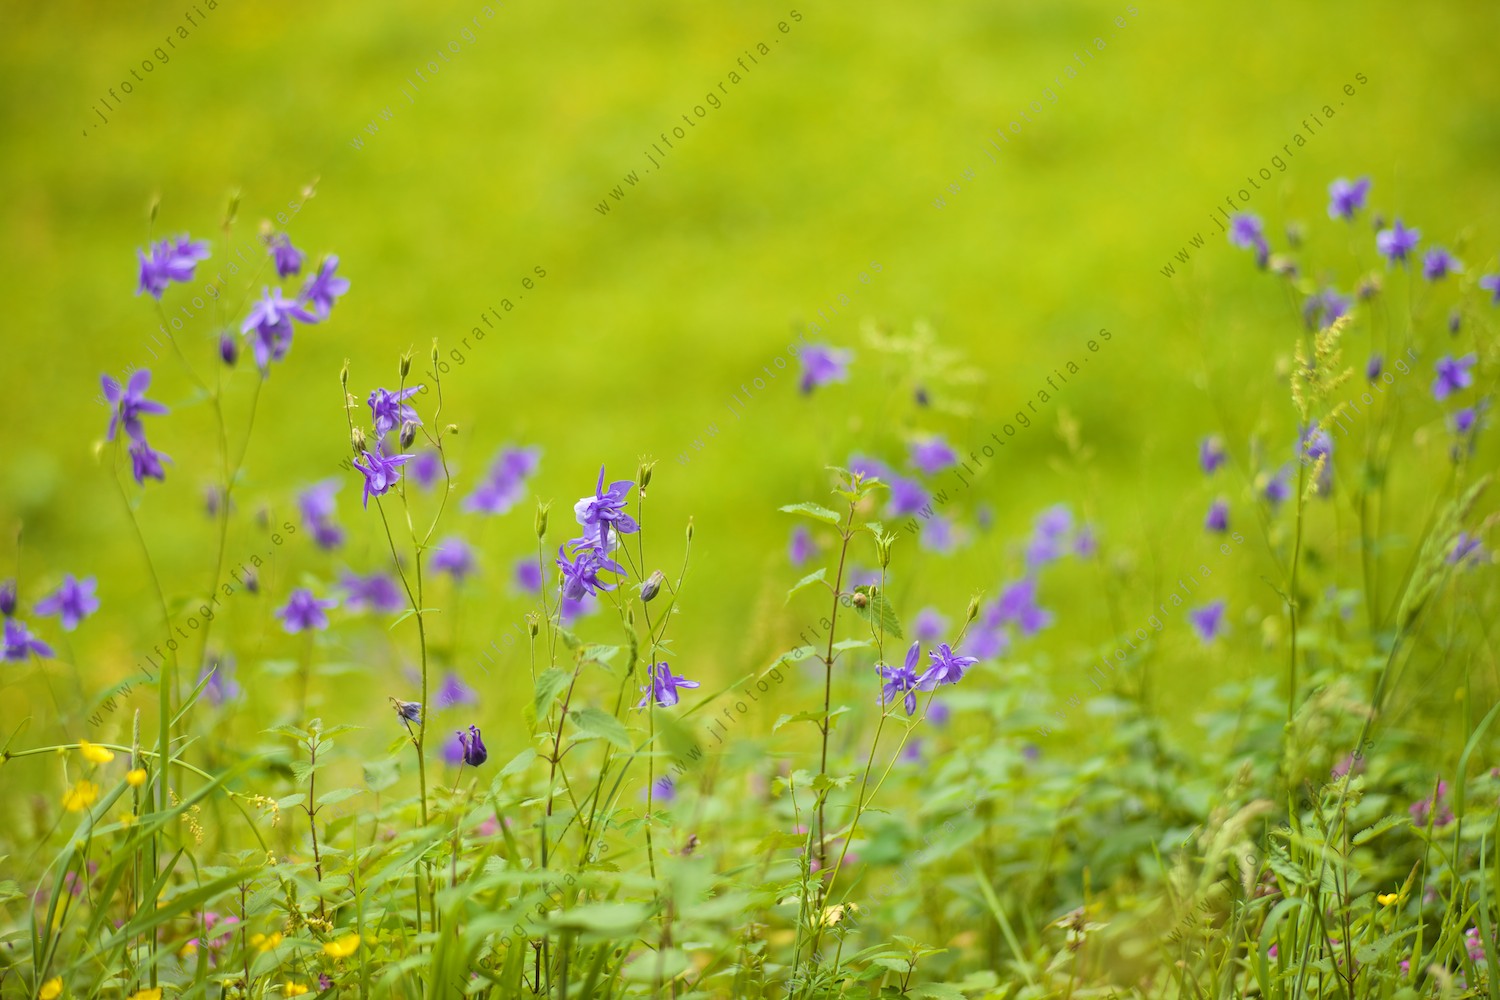 Detalle de flores en un fondo de hierba.